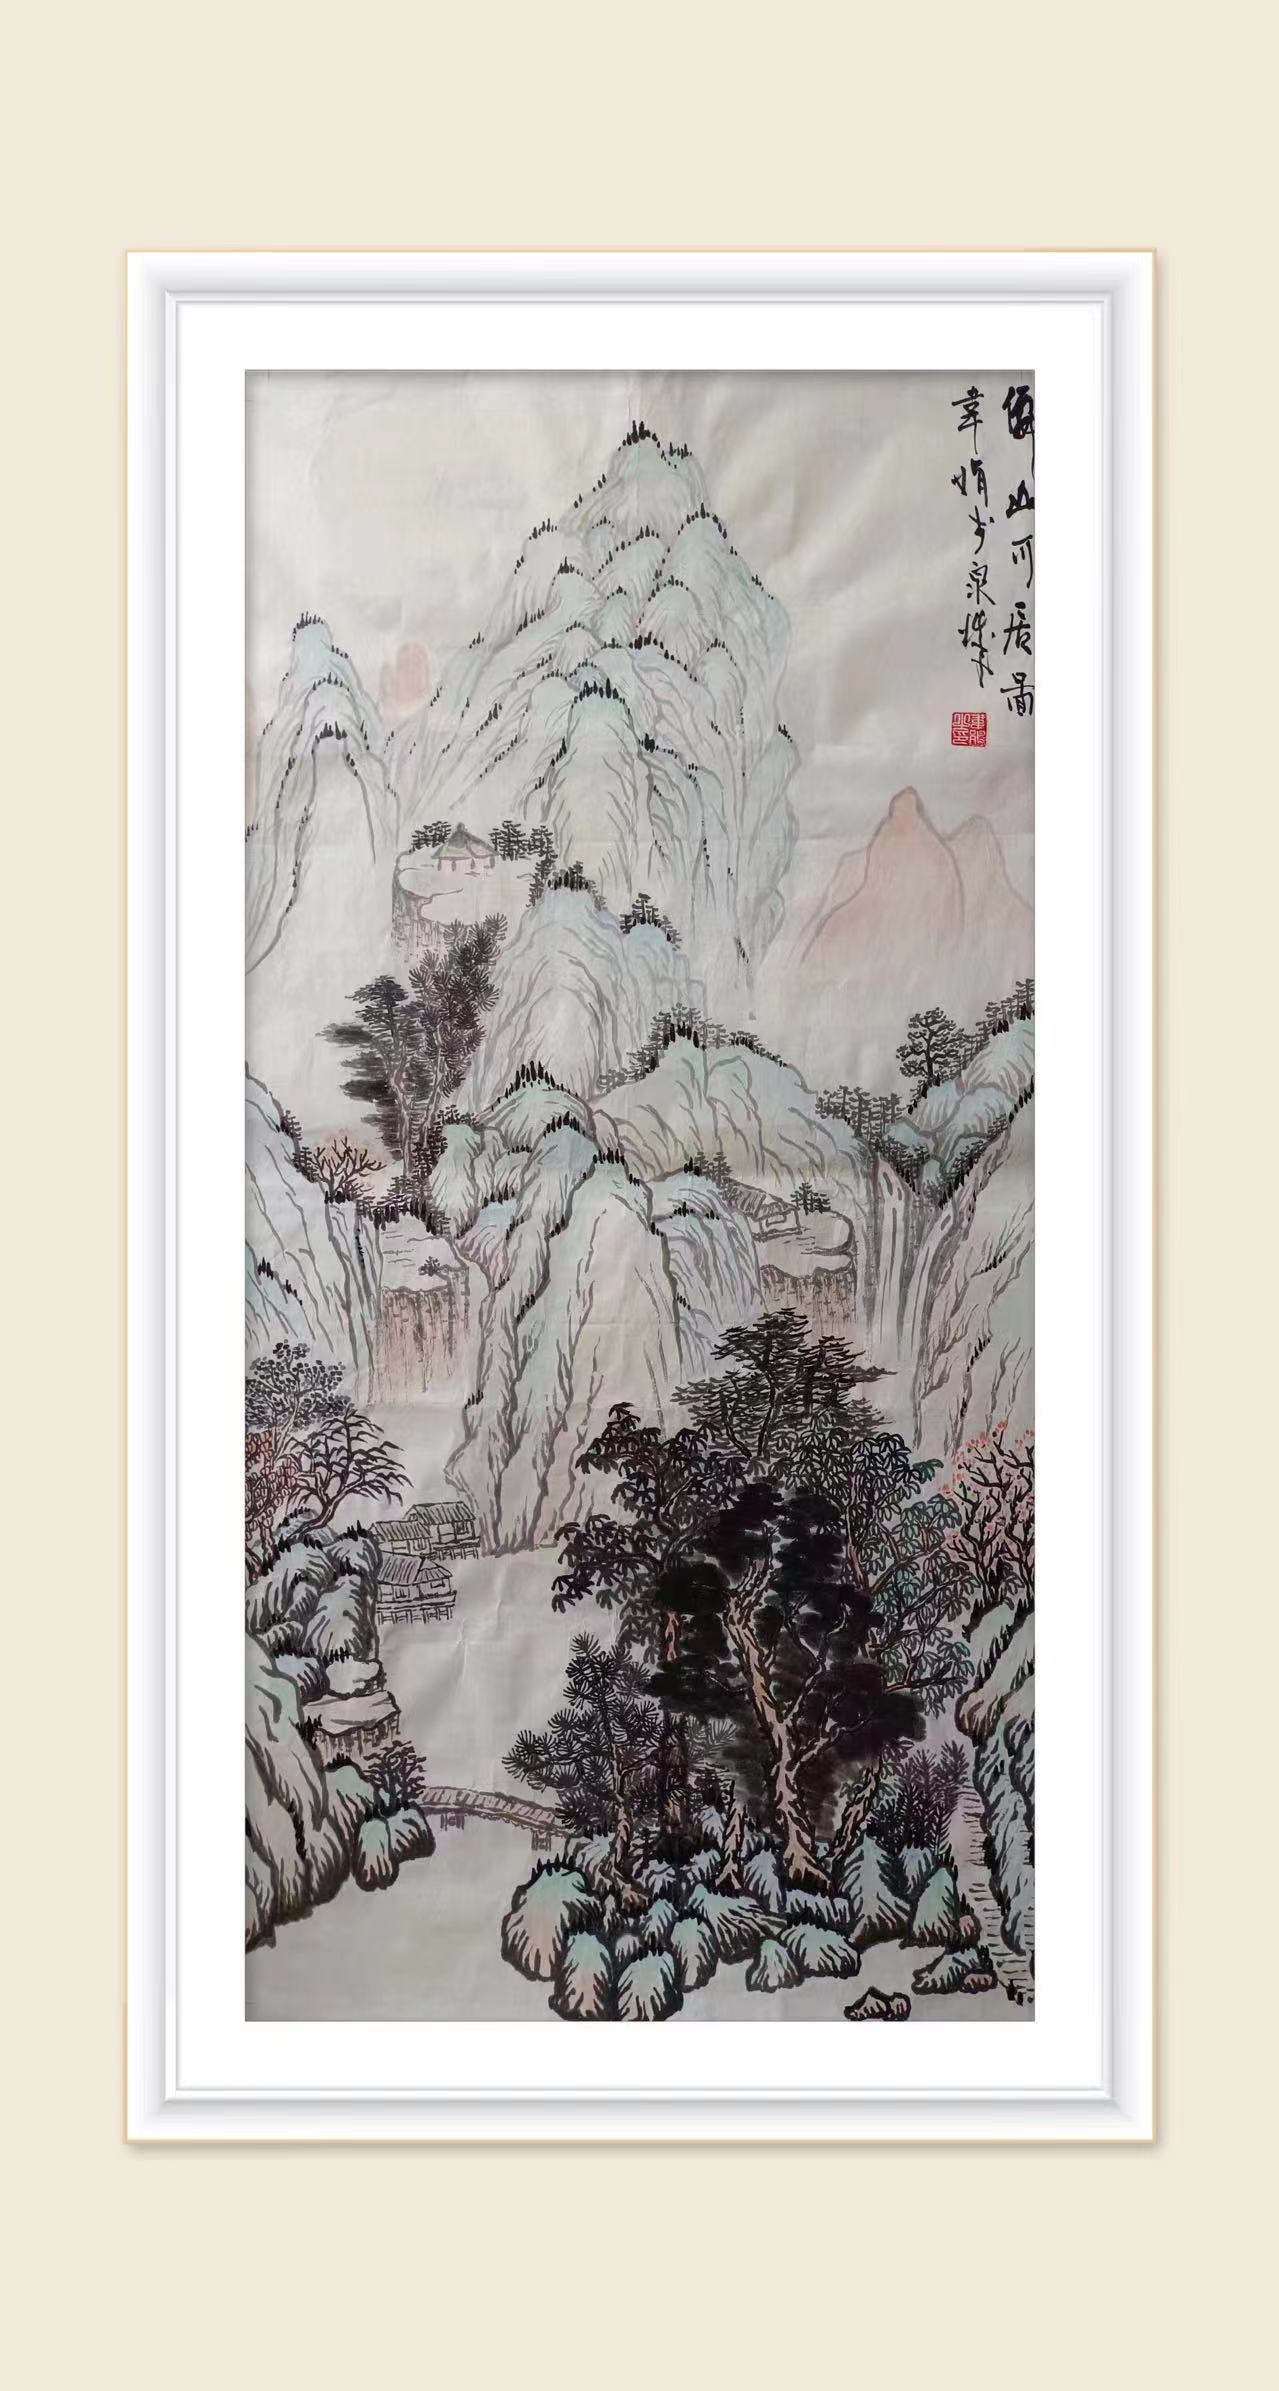 中国大众文化学会名人书画艺术发展委员会——韦娟